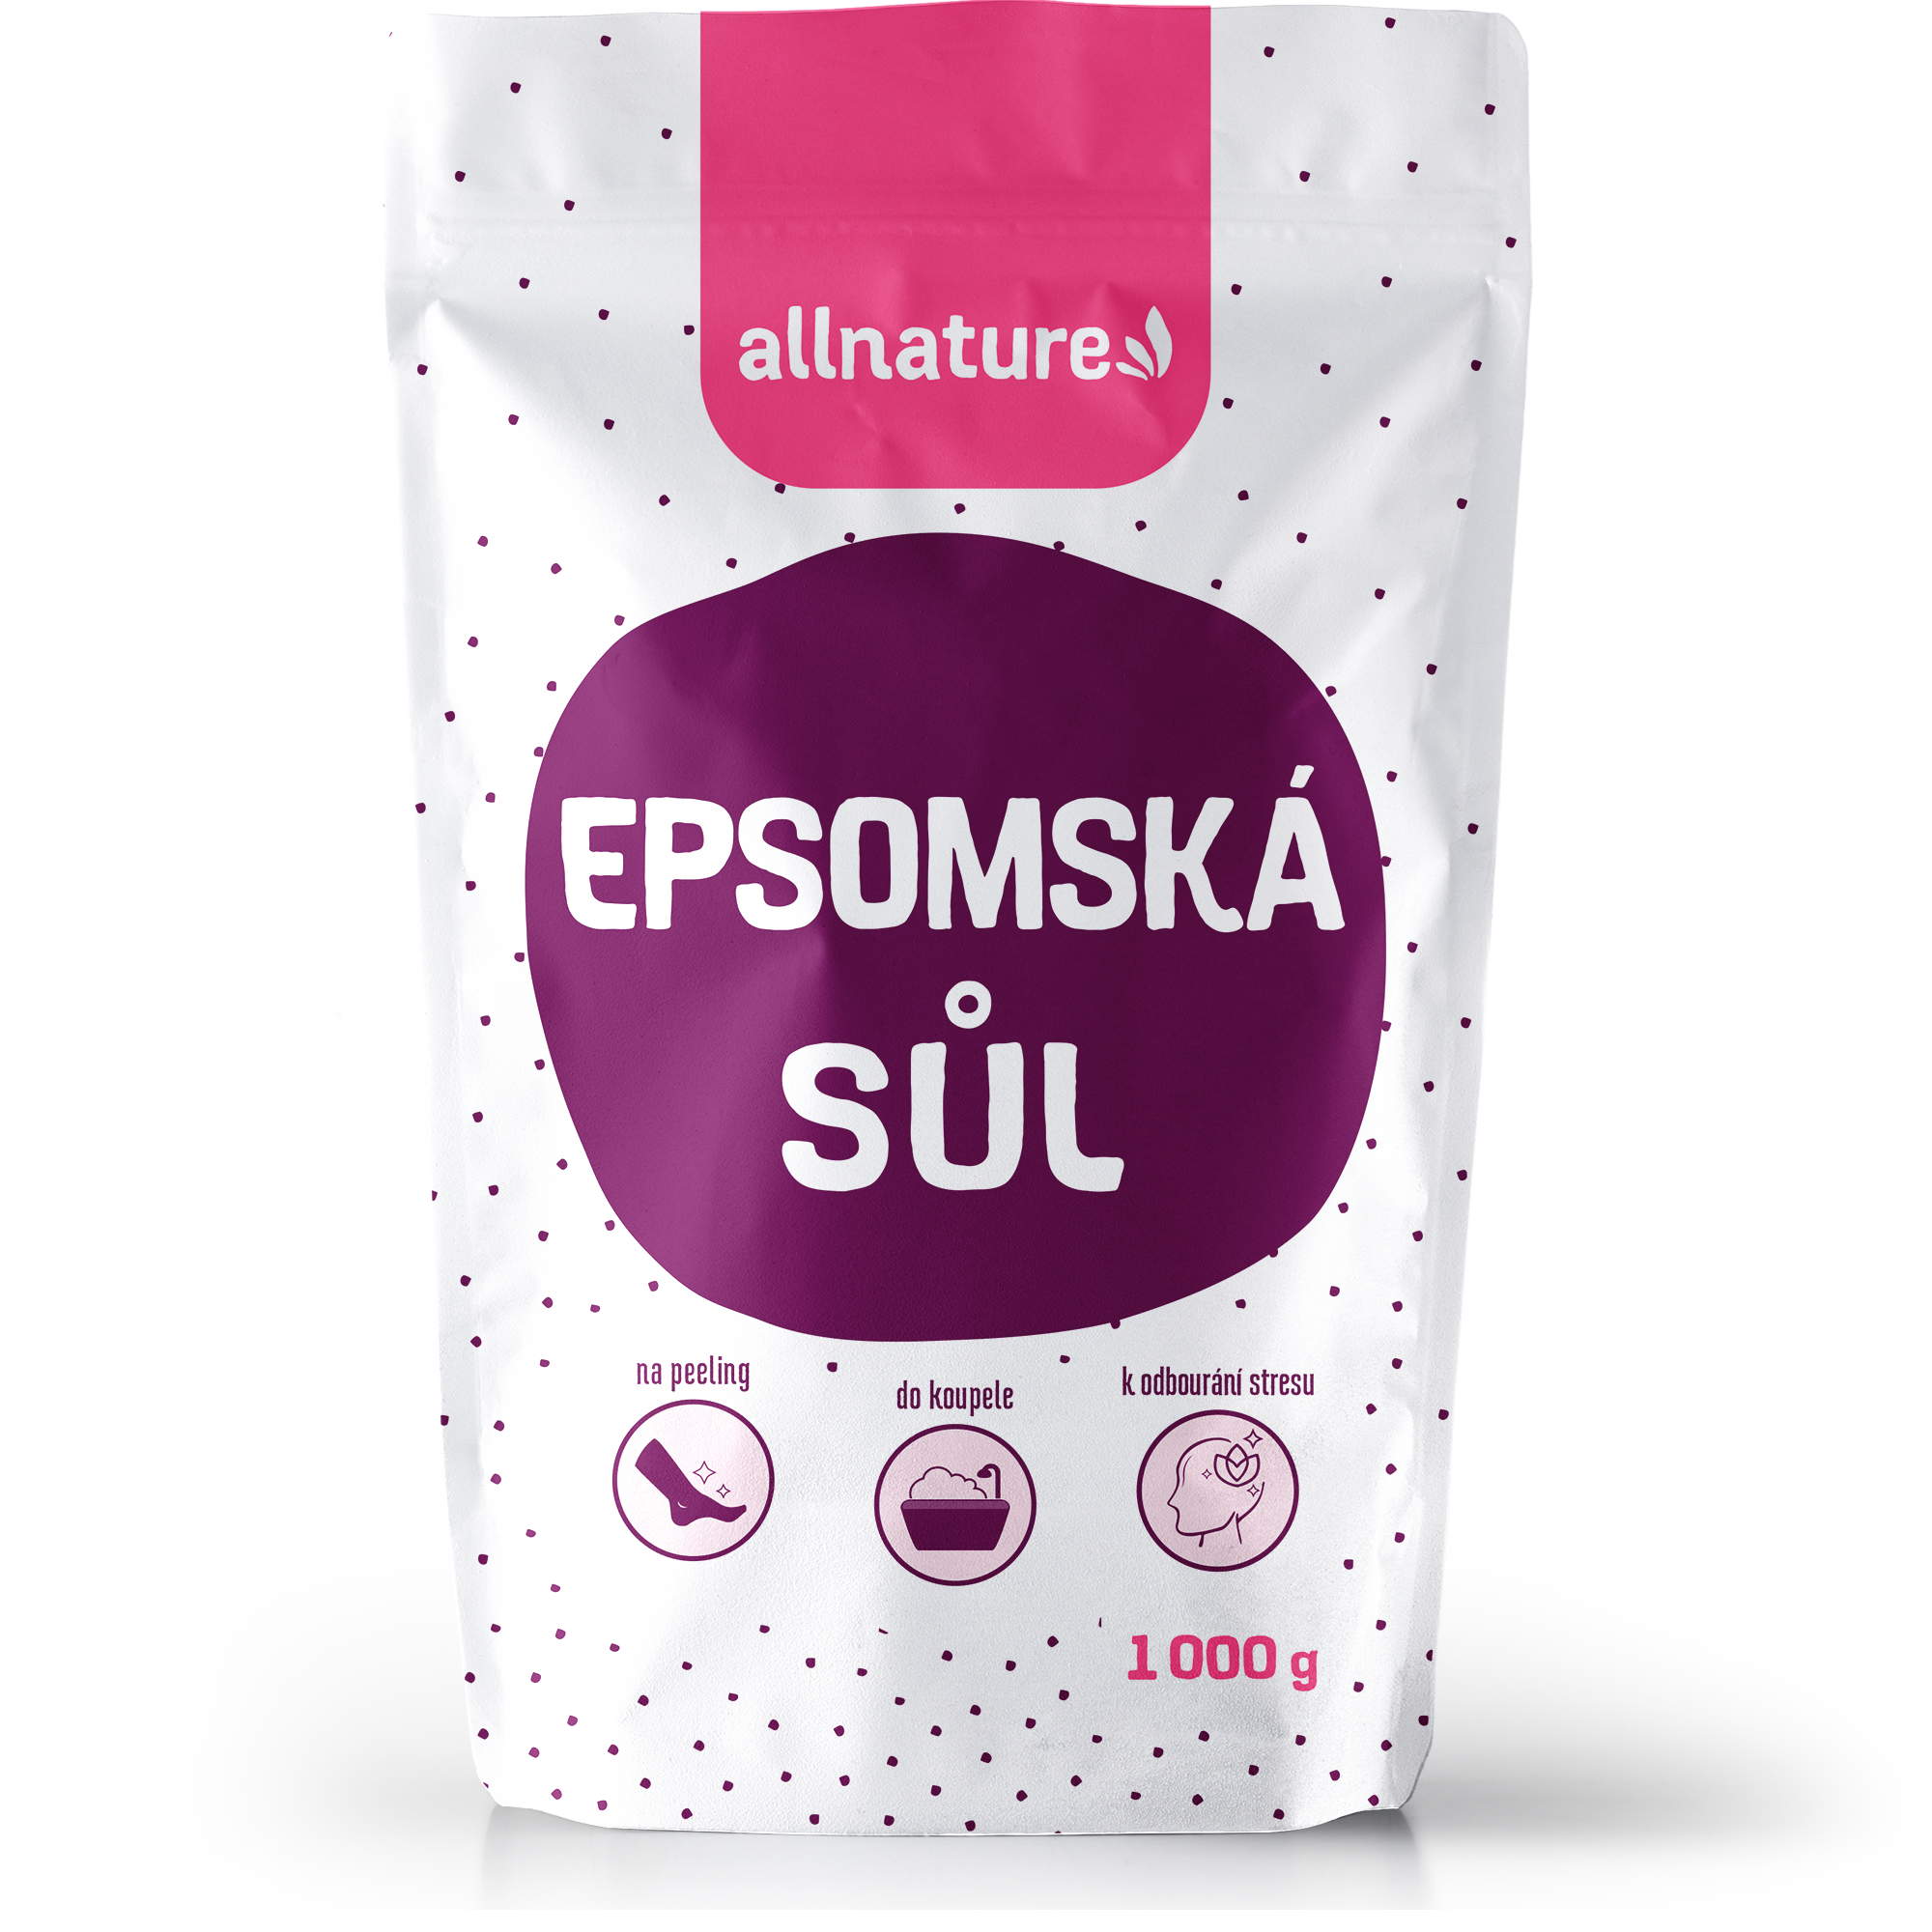 Allnature Epsomská sůl (5 kg) - II. jakost - detoxikuje a uvolňuje svaly Allnature